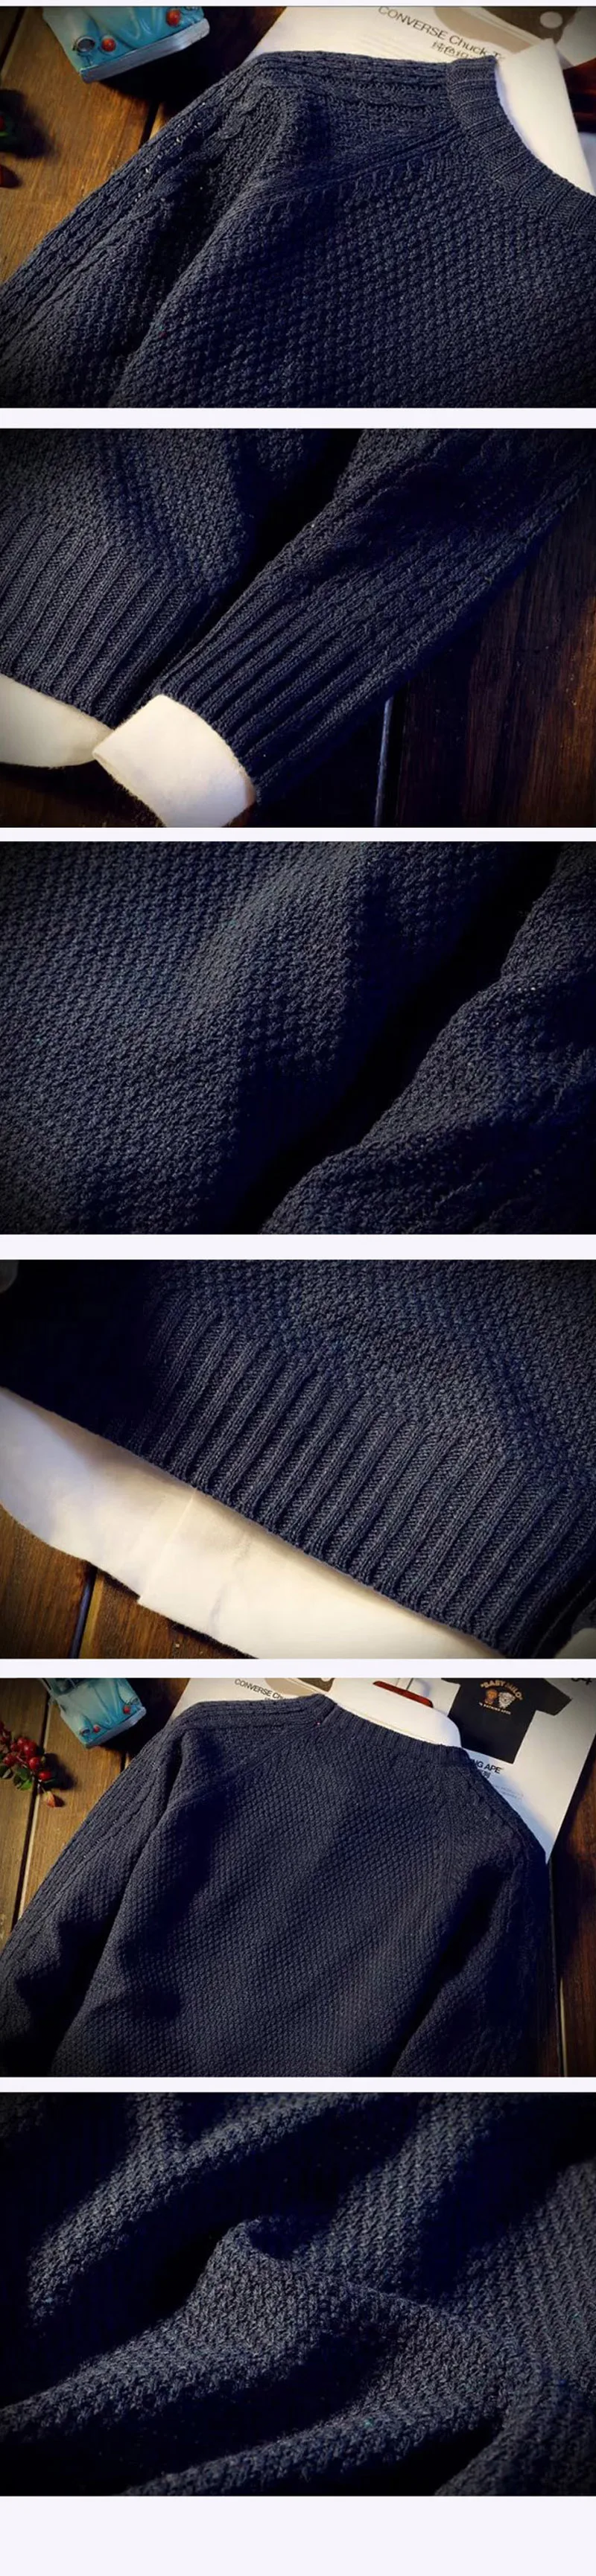 2019 новый пуловер с круглым вырезом для мужчин Популярные повседневное тонкий свитер плюс 5 однотонных цветов удобные тянуть Homme MZL709